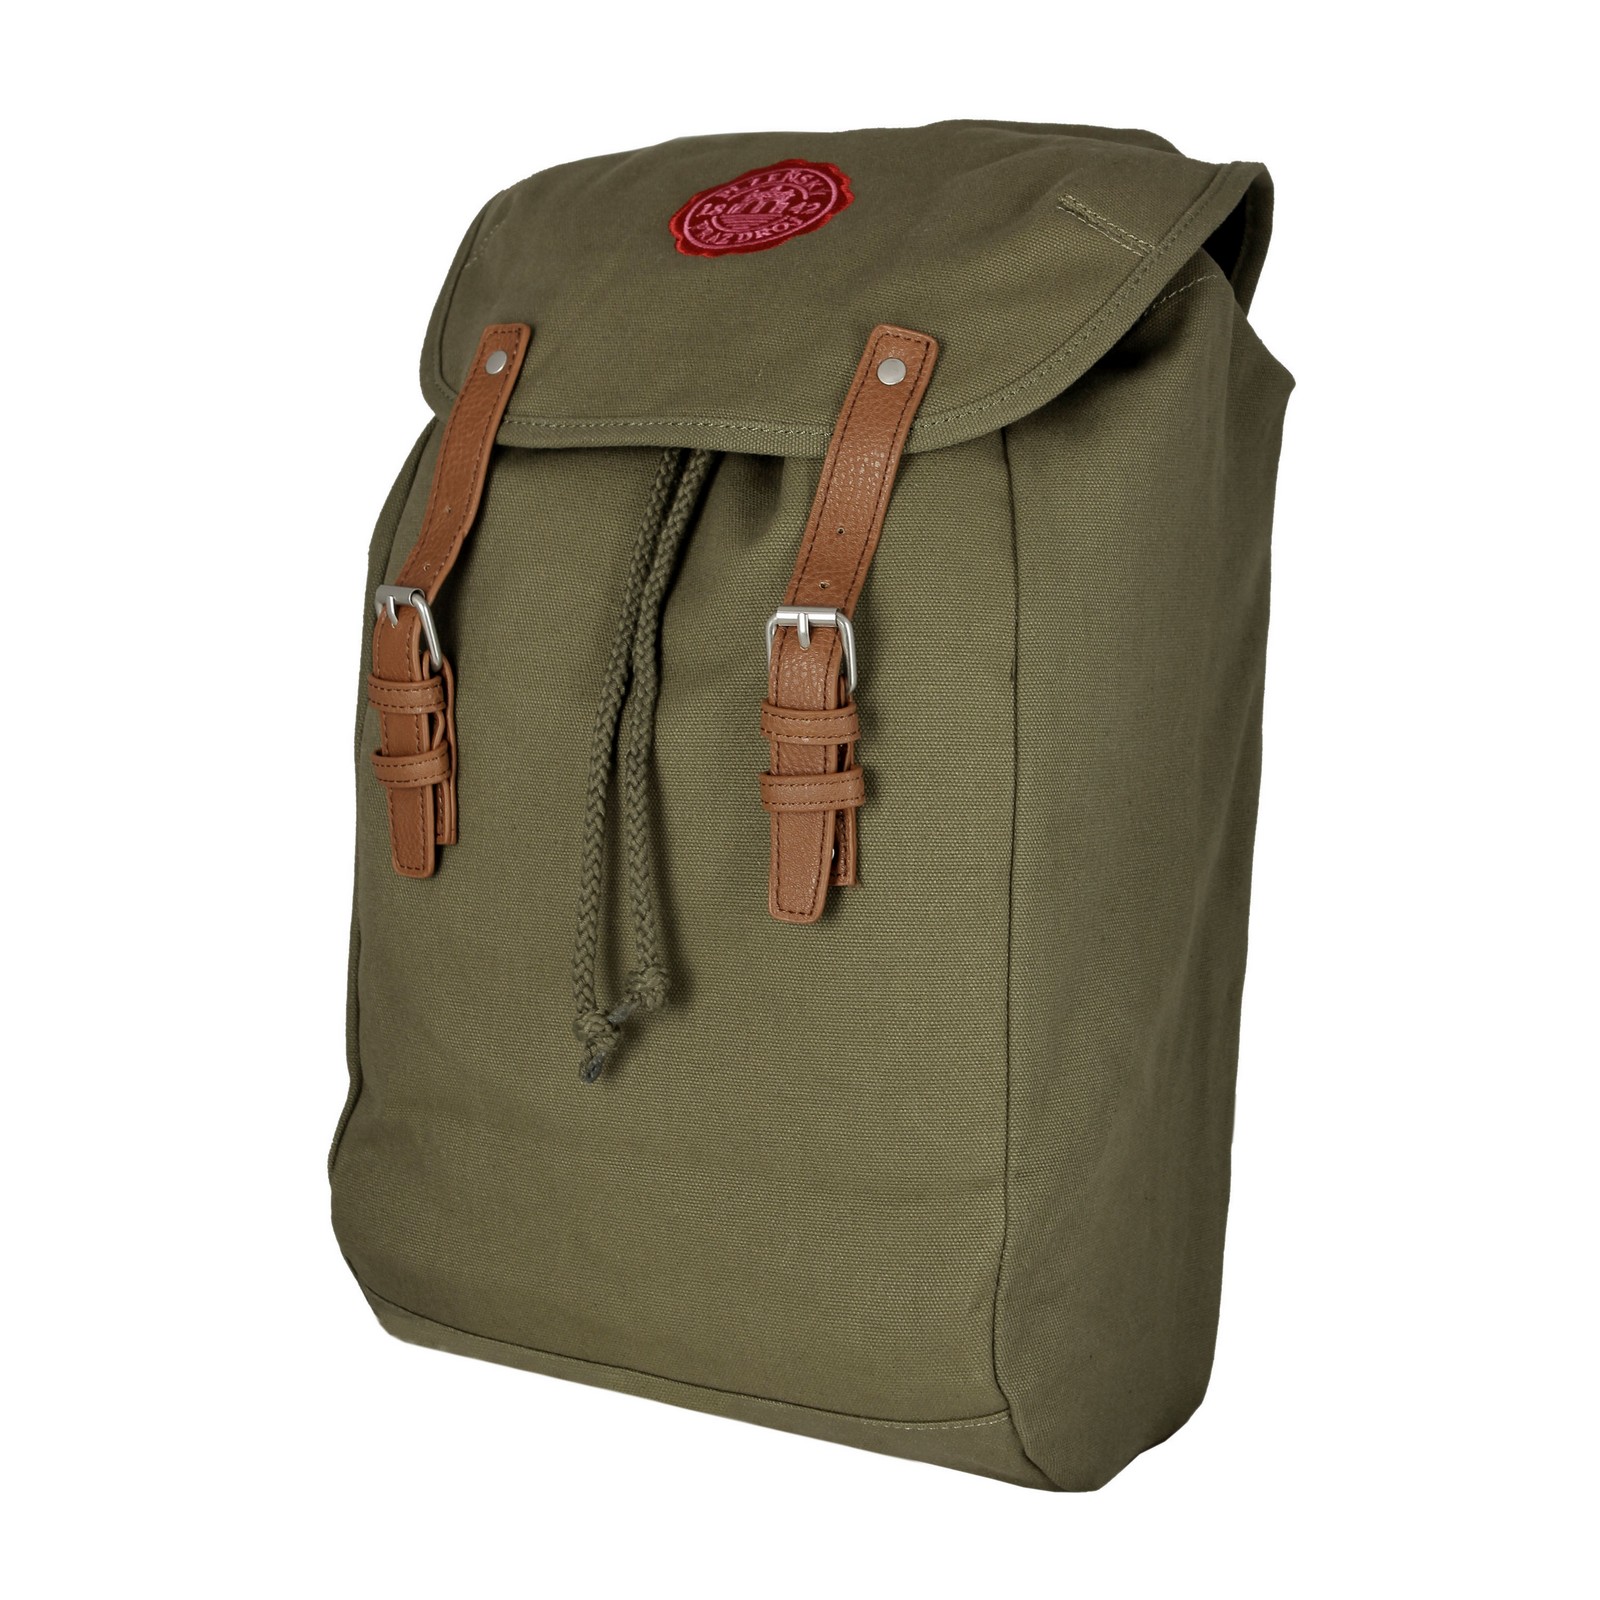 Pilsner Urquell backpack